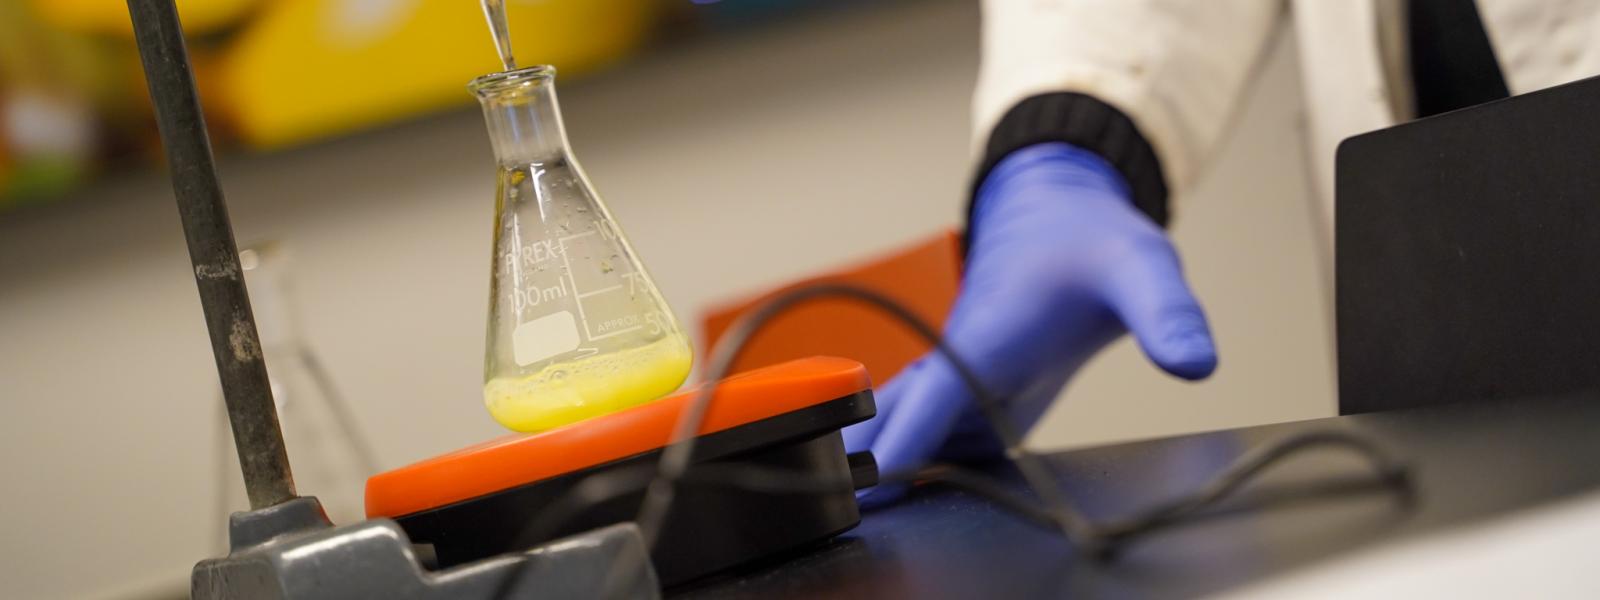 Et par hænder med blå gummihandsker er i gang med at lave kemiforsøg med gul væske i et glas.